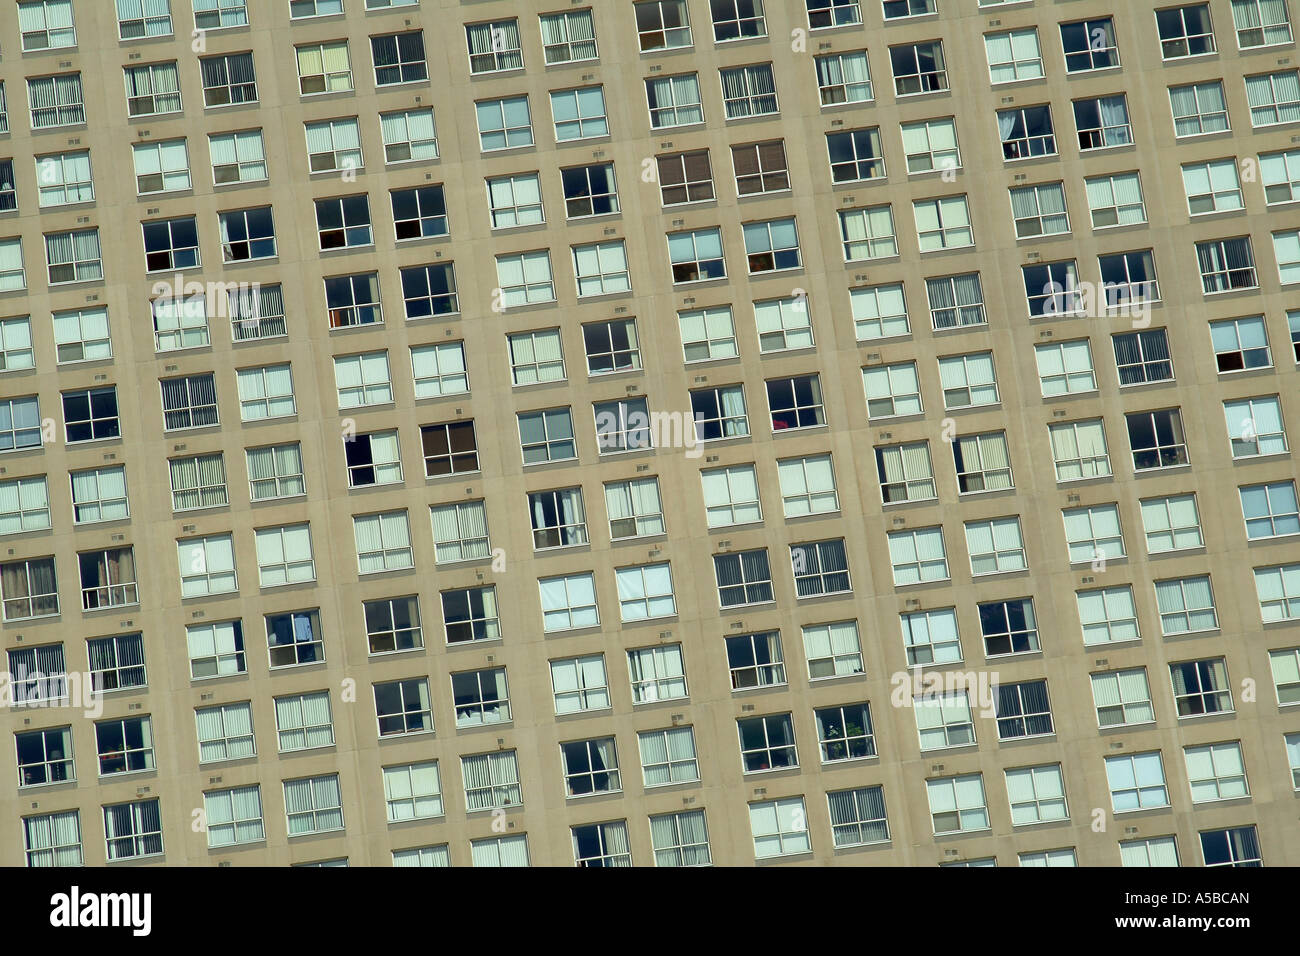 Raster von Fenstern im Gebäude. Stockfoto